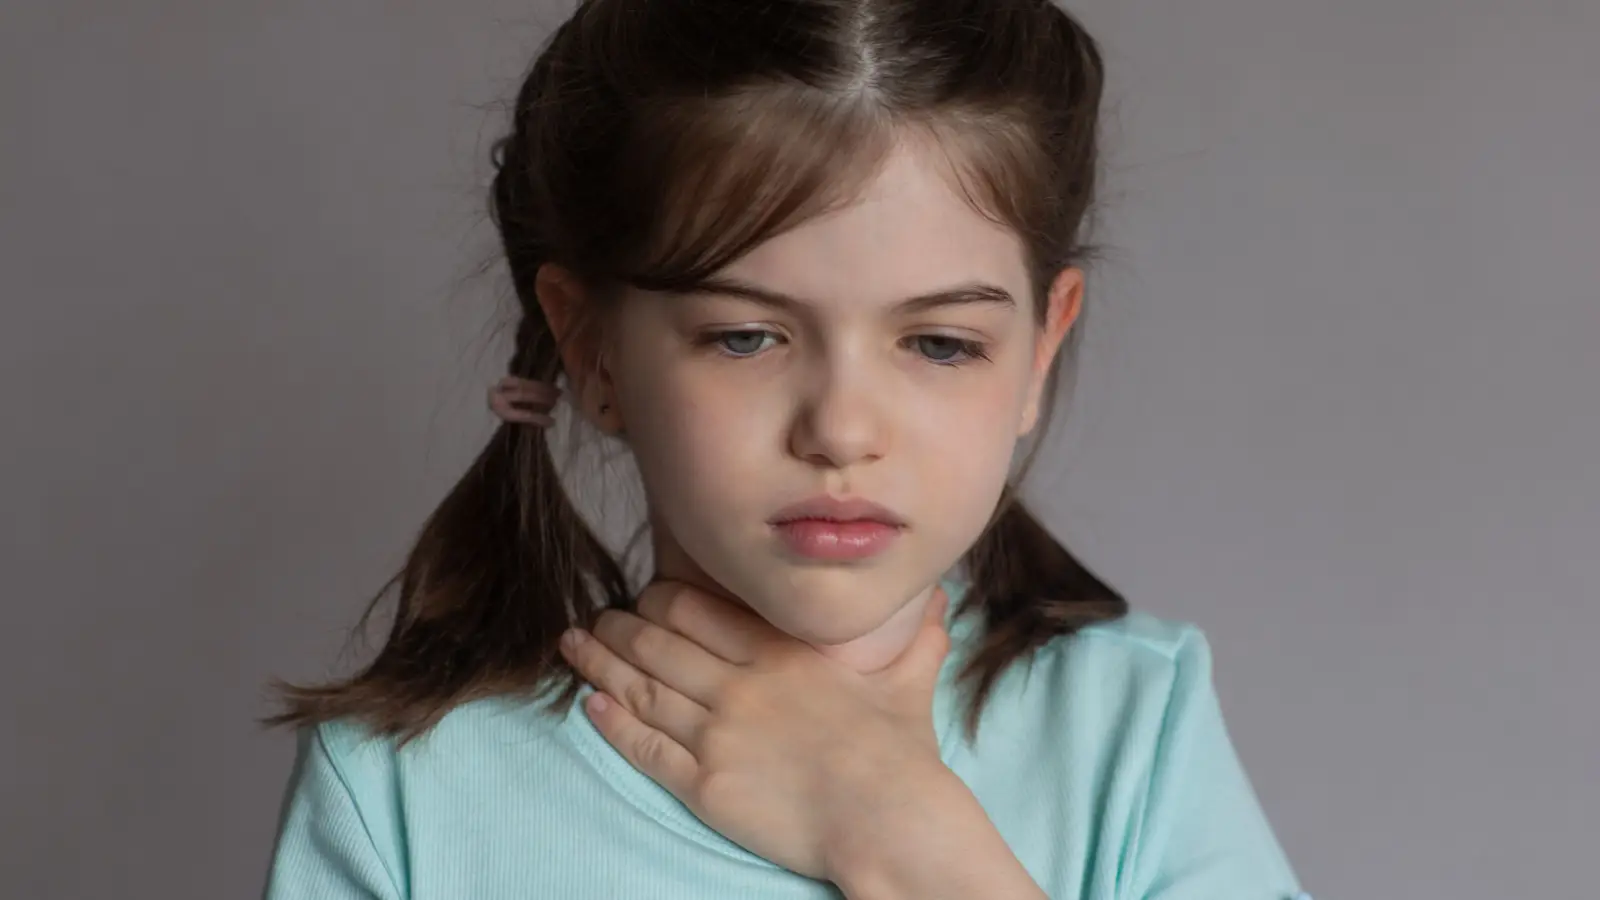 ما هي أسباب حساسية الصدر عند الأطفال؟ وما علاجها؟